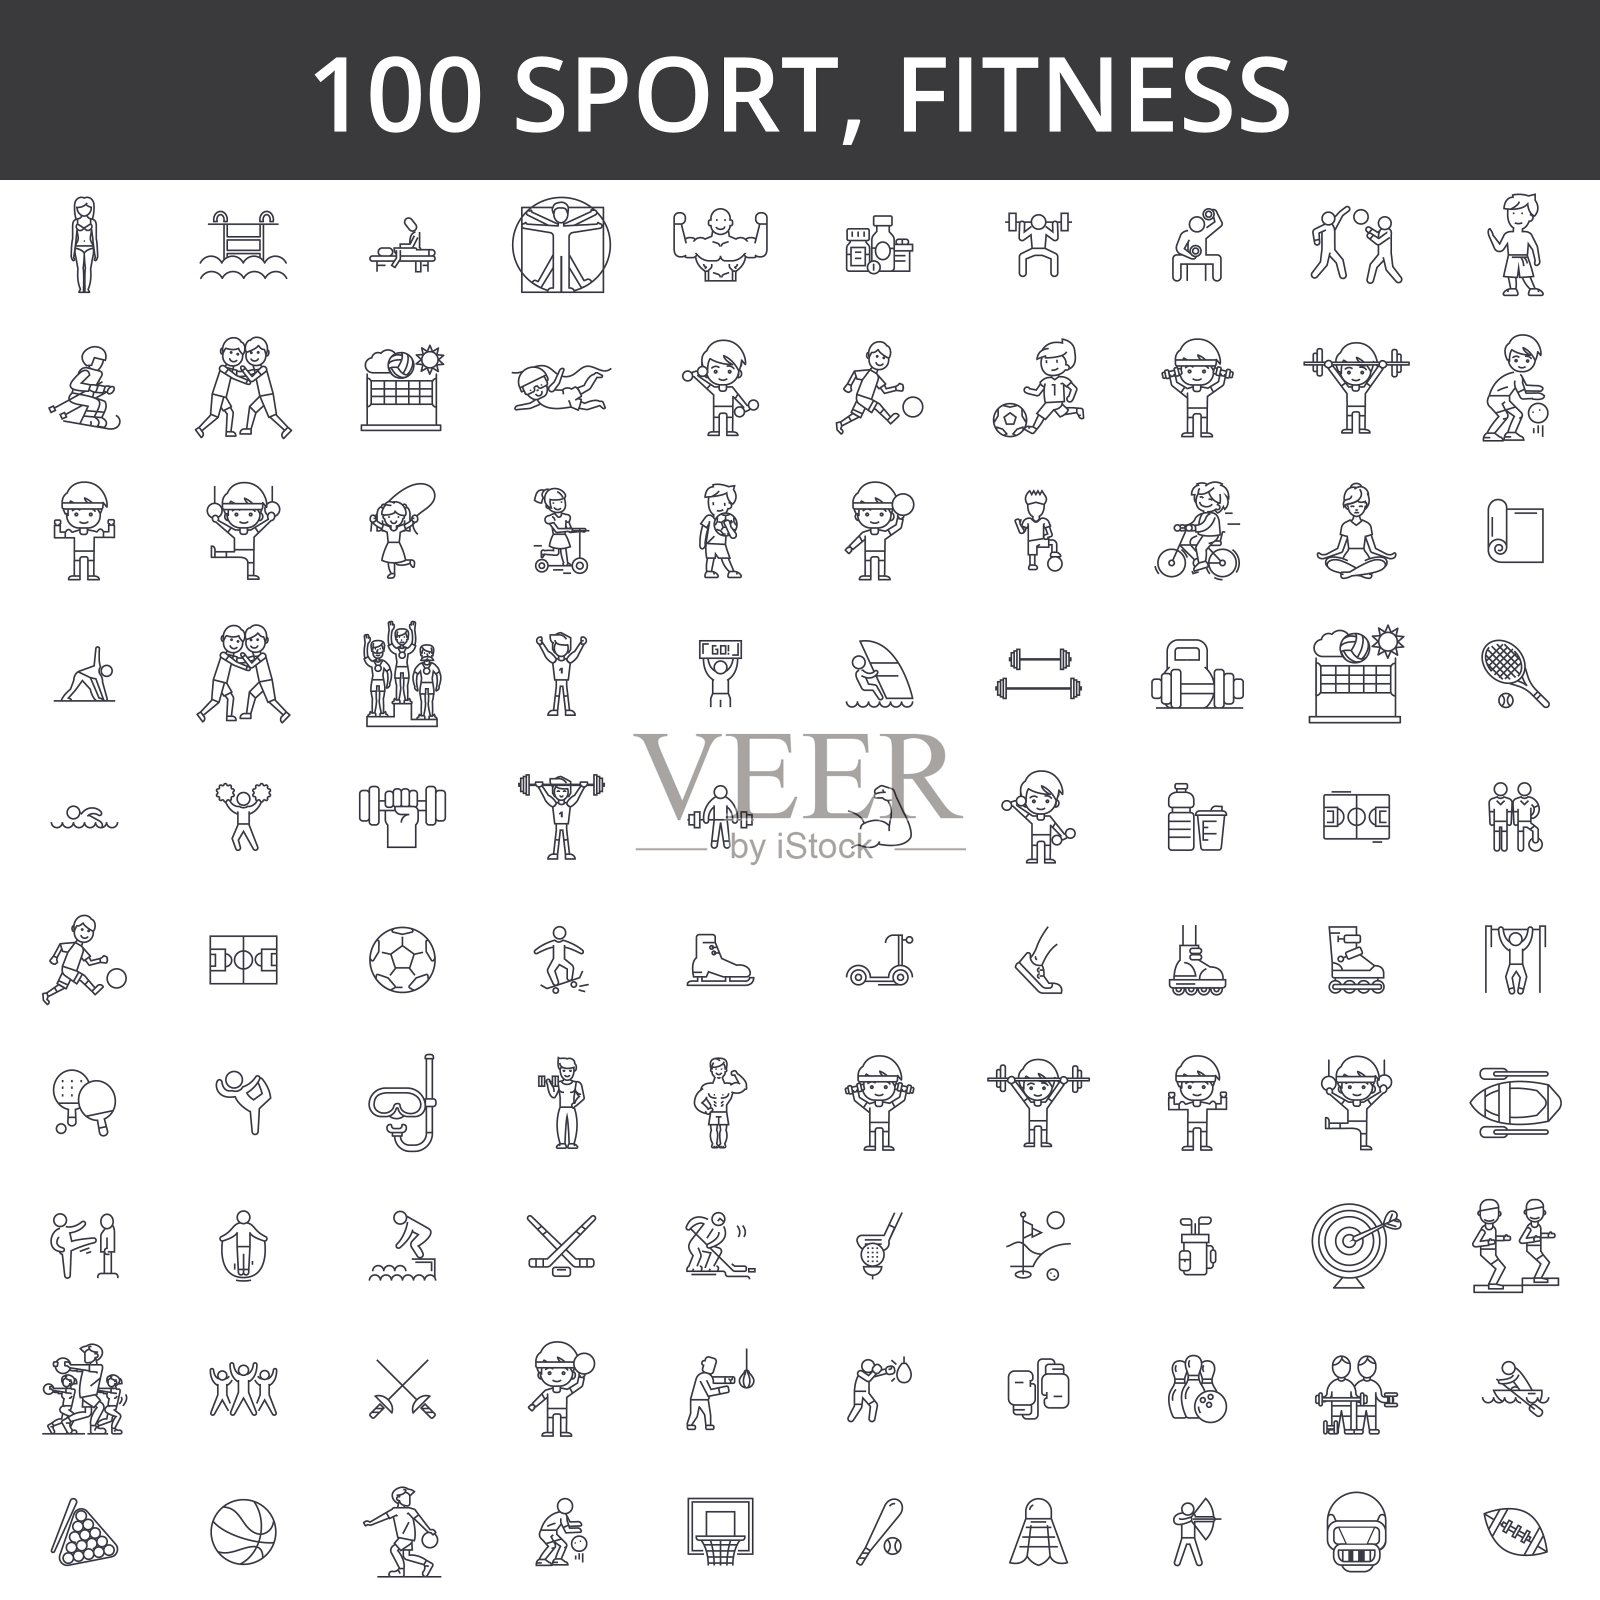 体育、健身、足球、空手道、足球、曲棍球、健康生活方式、健身、拳击、棒球、篮球、滑雪、游泳等线条图标、标志。说明矢量的概念。可编辑的中风图标素材